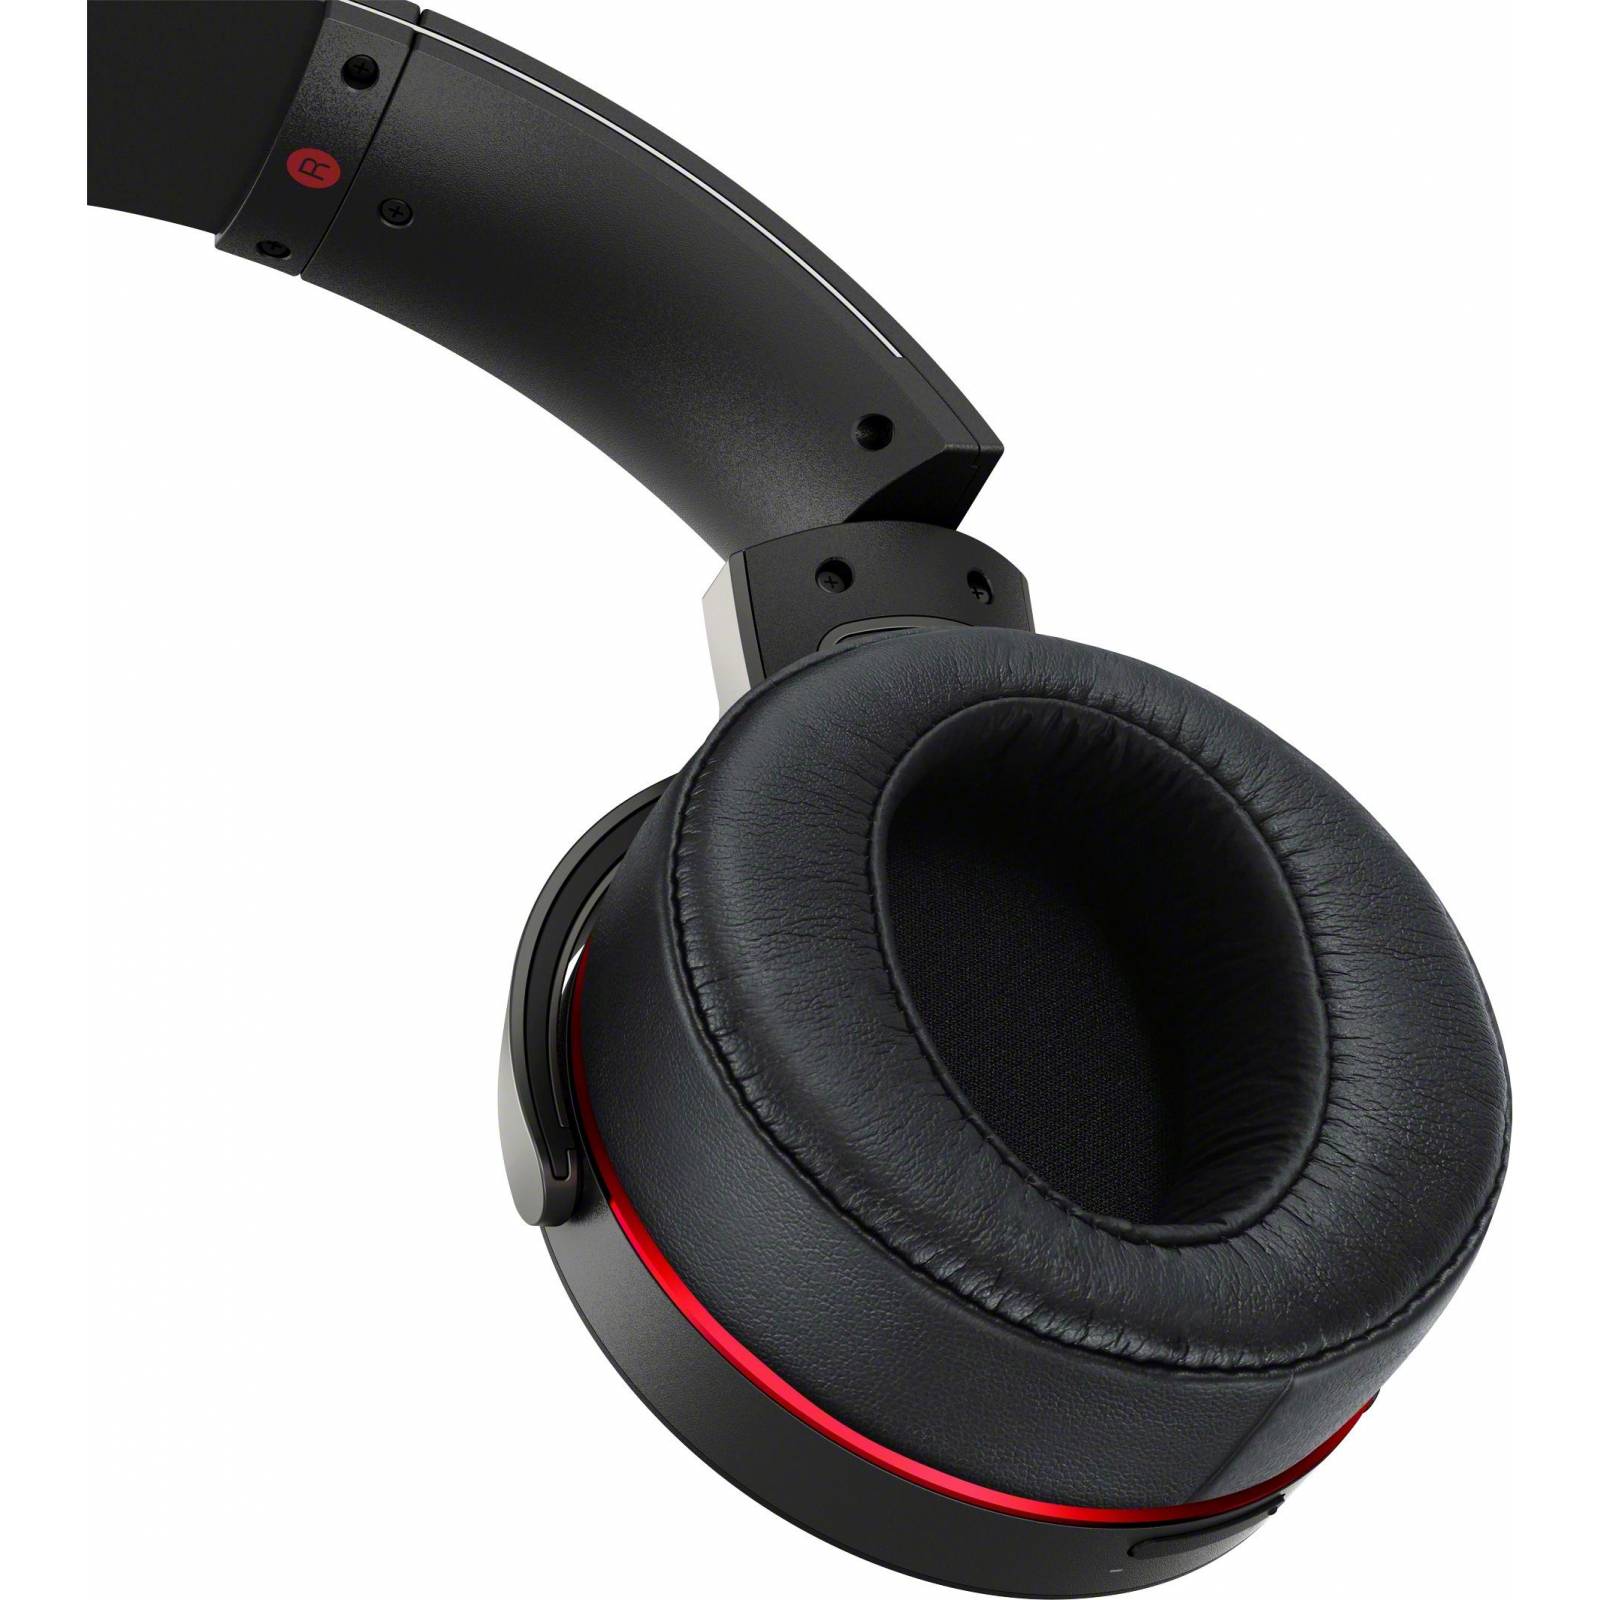 Audífonos Inalámbricos Sony Xb950b1 Extra Bass Bluetooth Negro